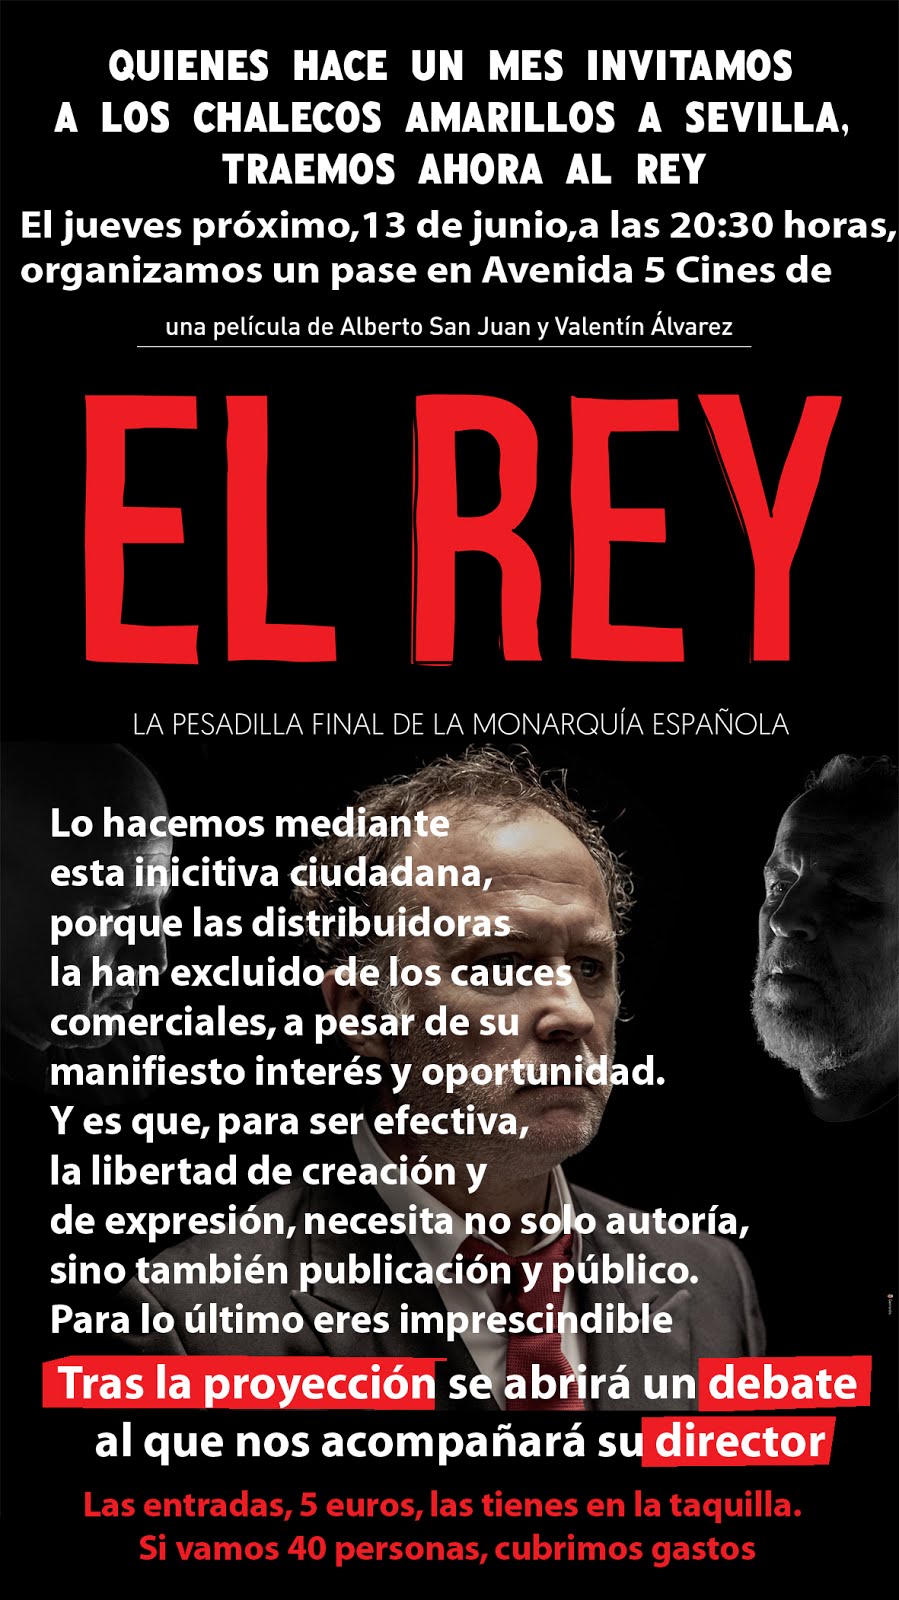 Jueves 13 Junio: Proyección película "EL REY" en Sevilla y Debate con su director.